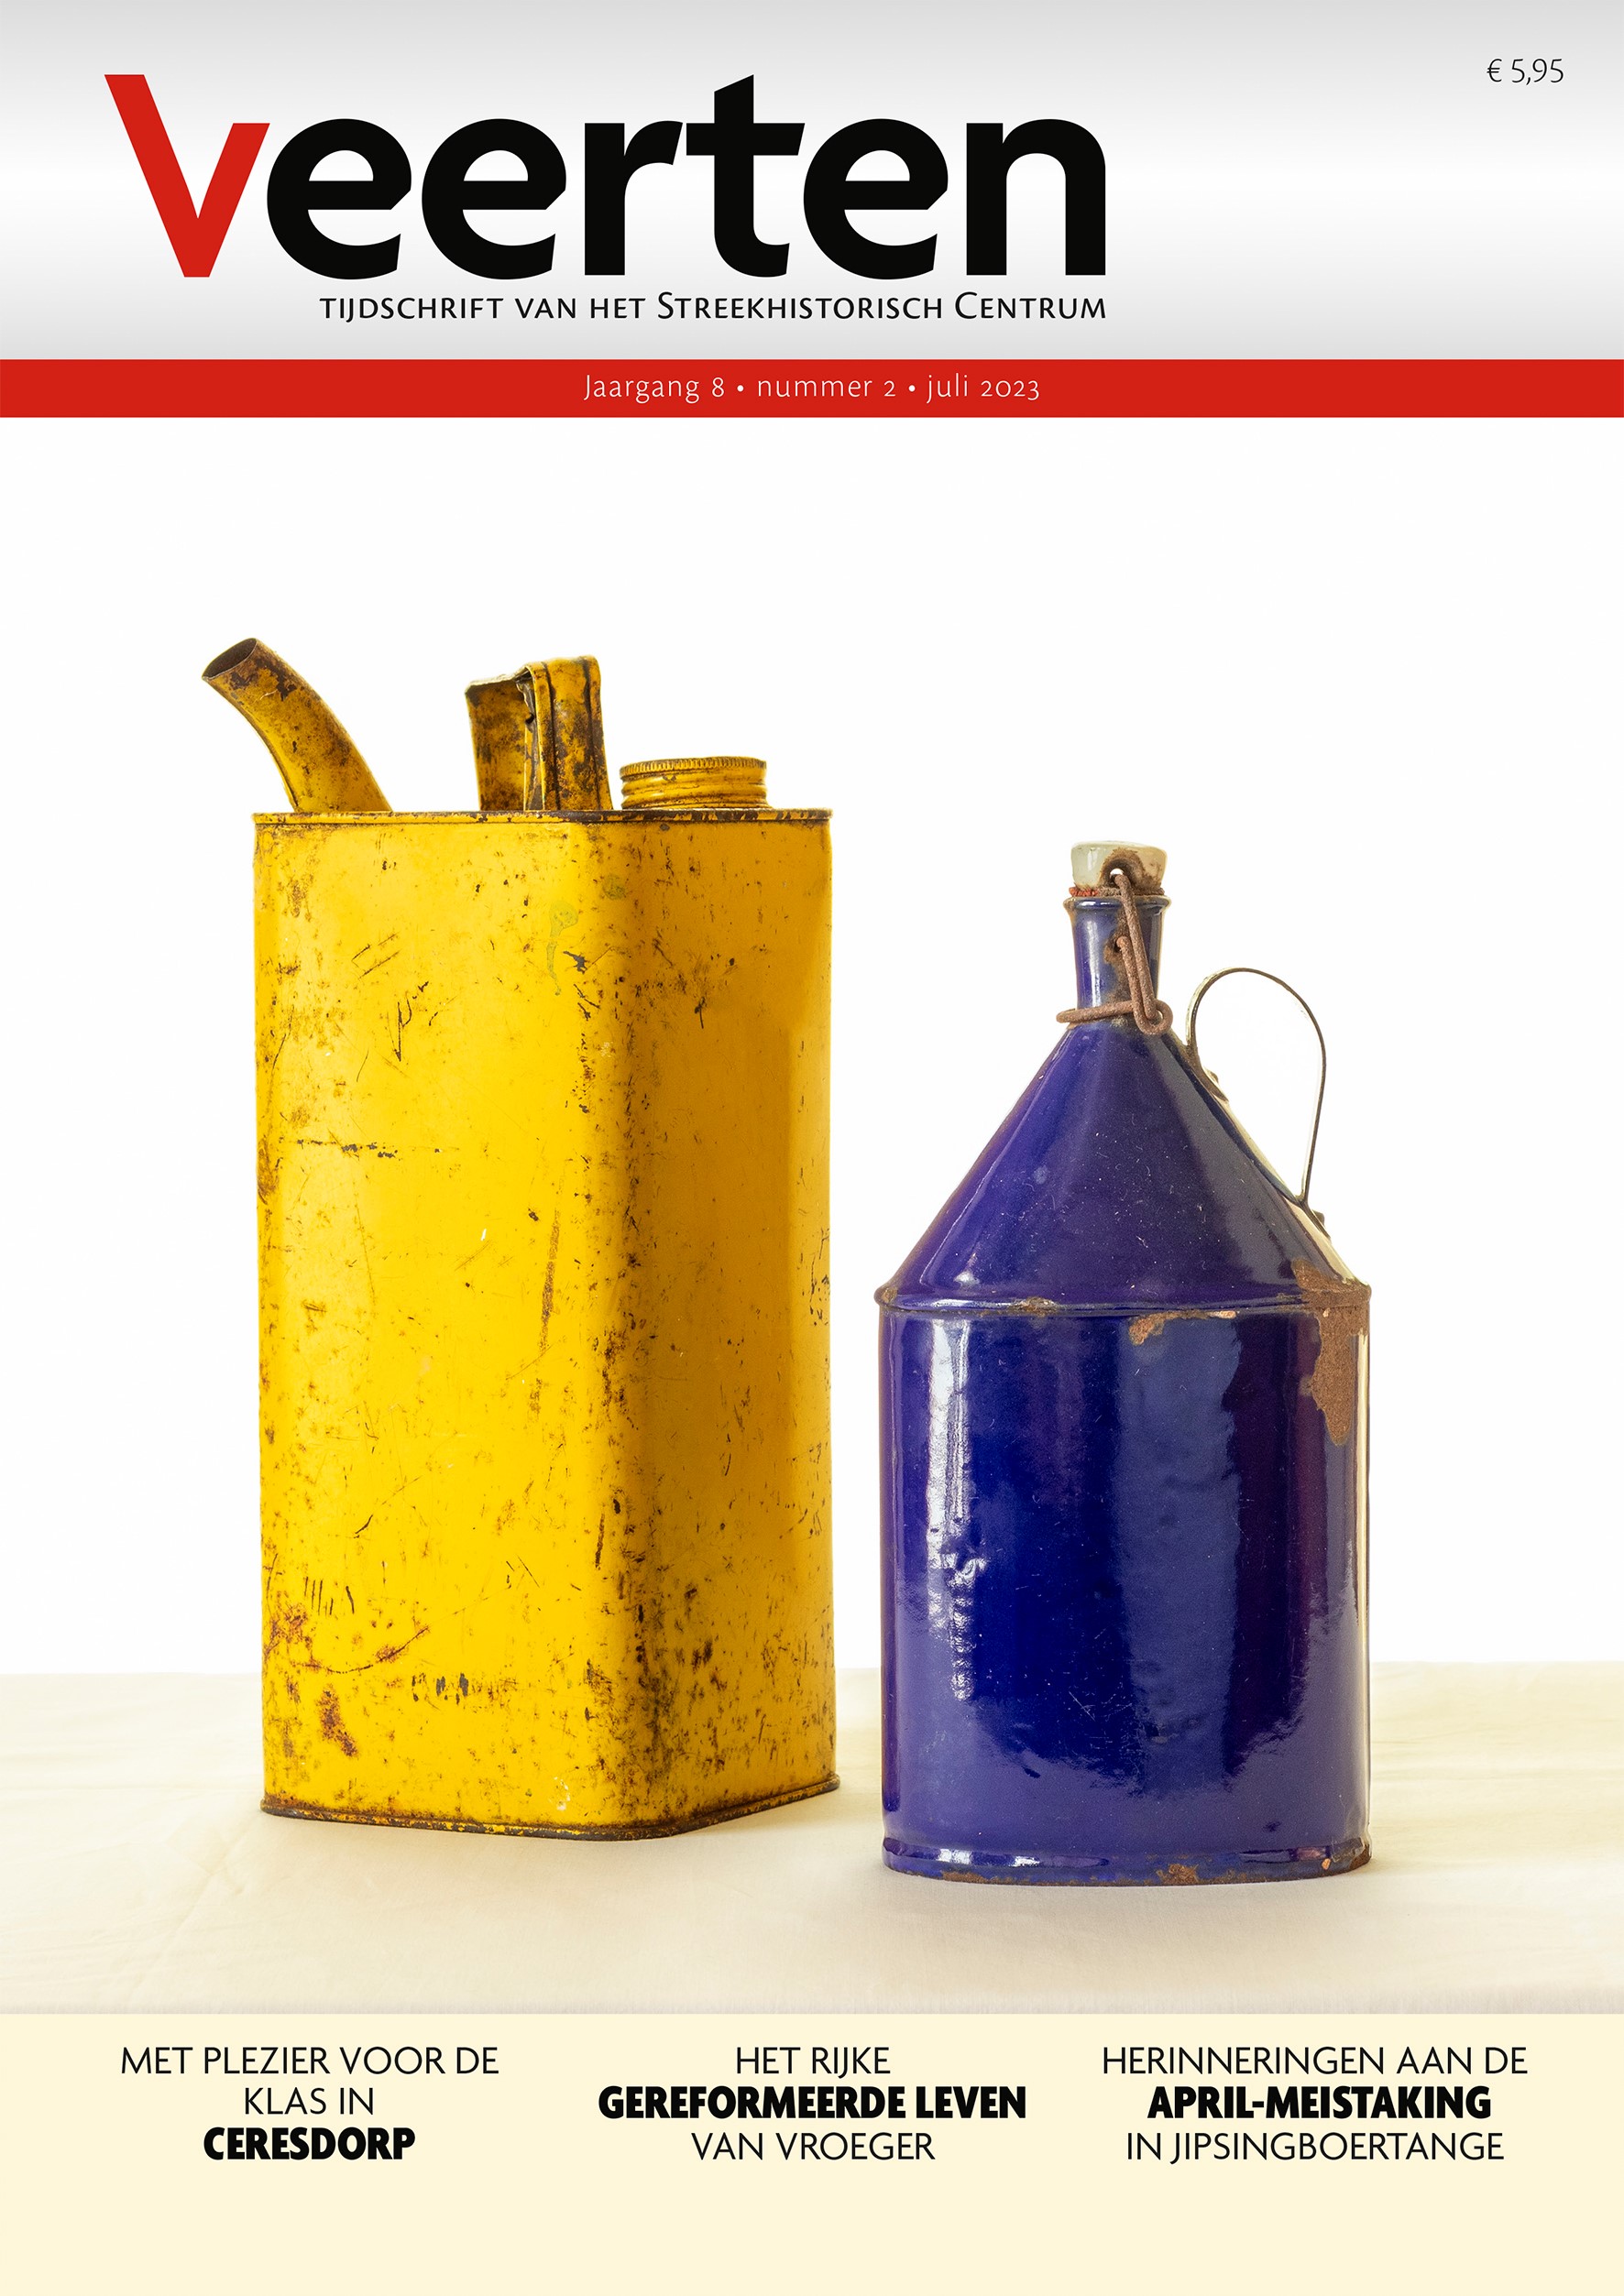 Cover van Veerten 8-2 (Jaap Kok|SHC). Het omslag werd geïnspireerd door de nieuwe expositie Tijdcollages, waarbij kunstenaars Merel Wendt en Marijke Klamer zich lieten inspireren door de collectie van het SHC.